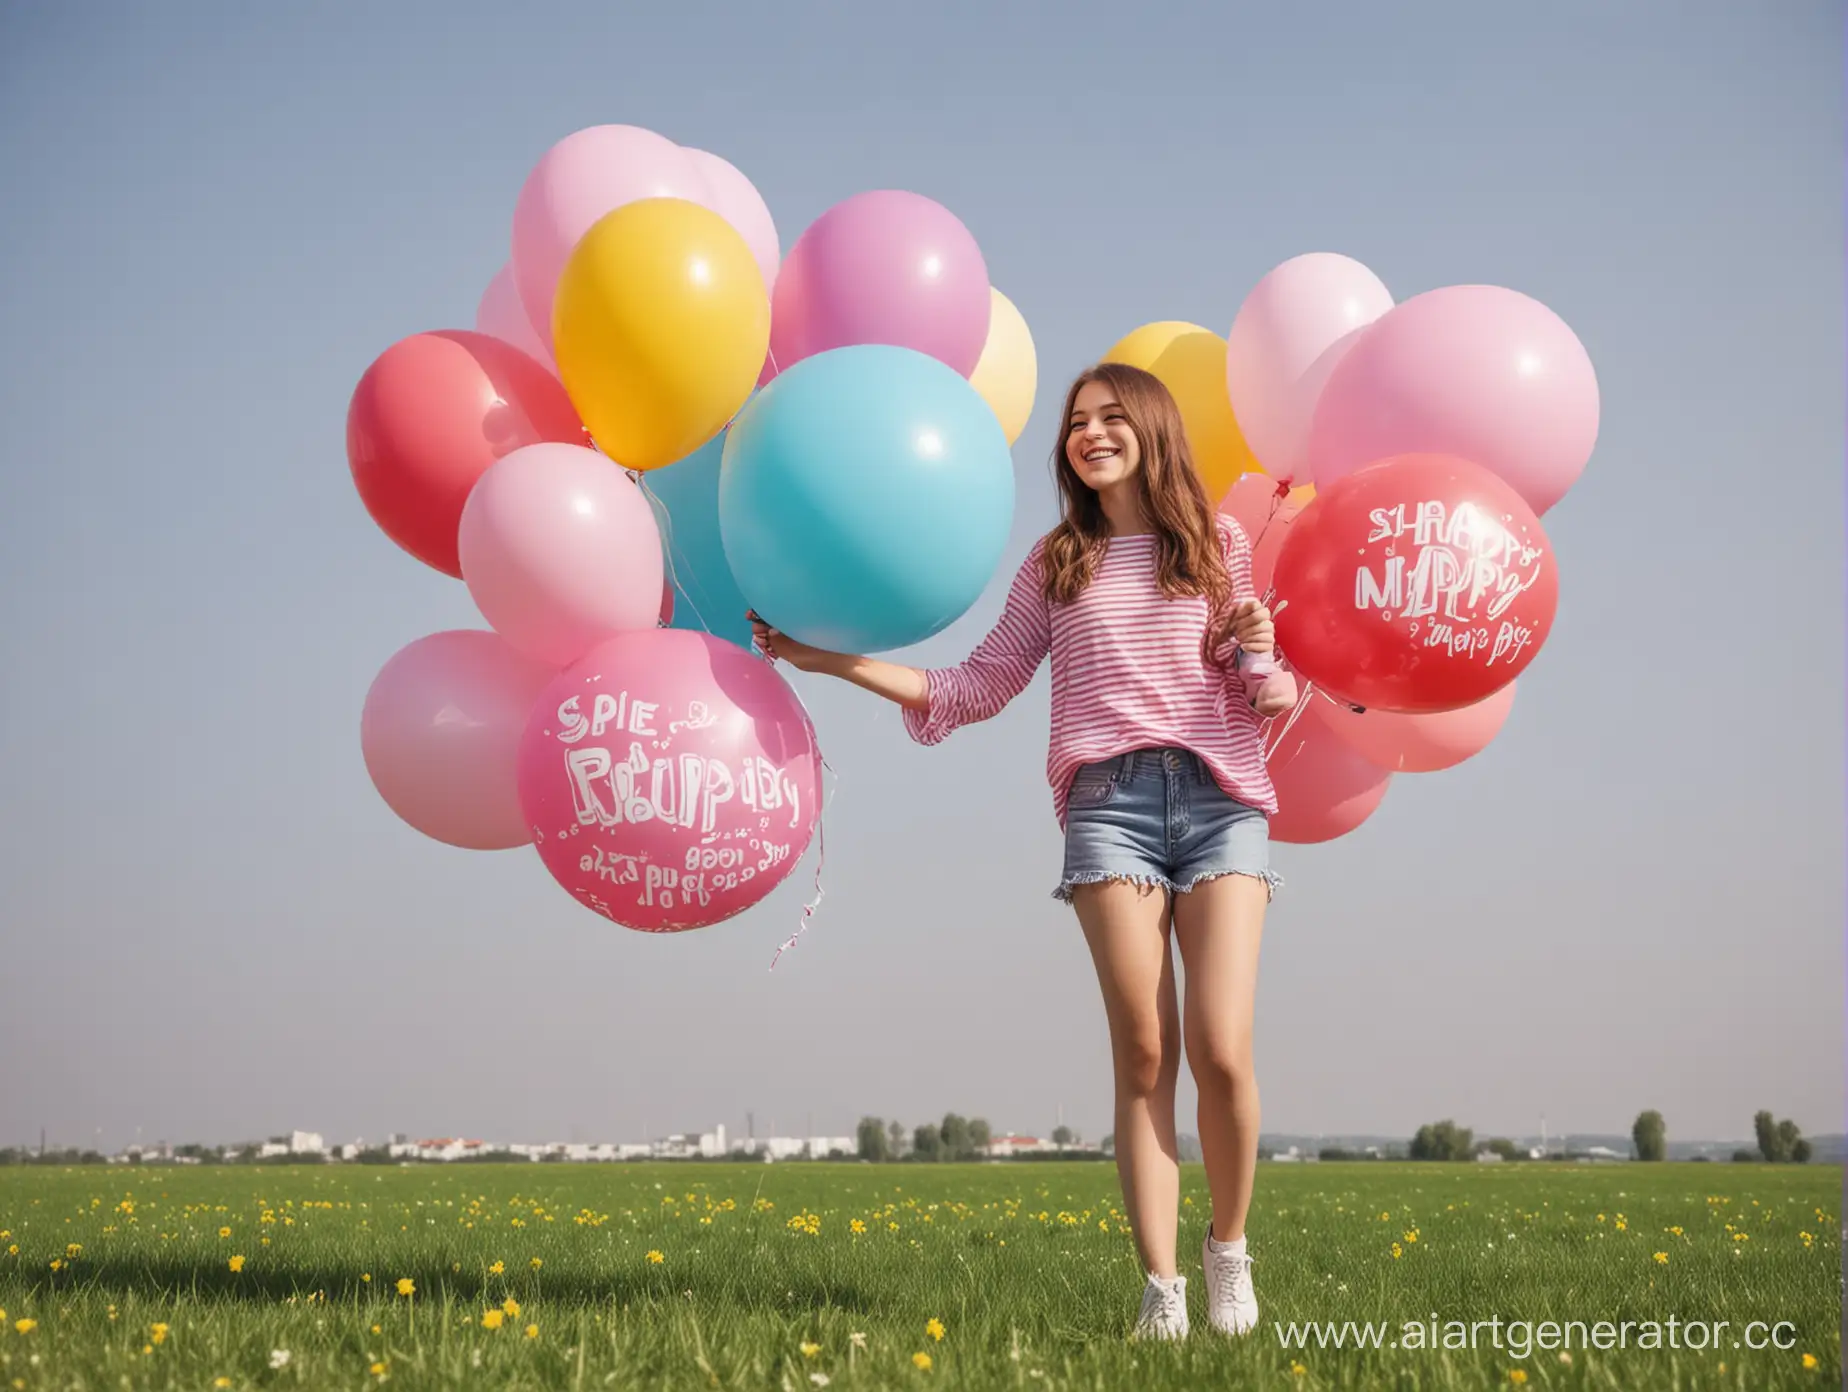 Реклама. Весенняя акция на воздушные и надувные шары с счастливой девушкой